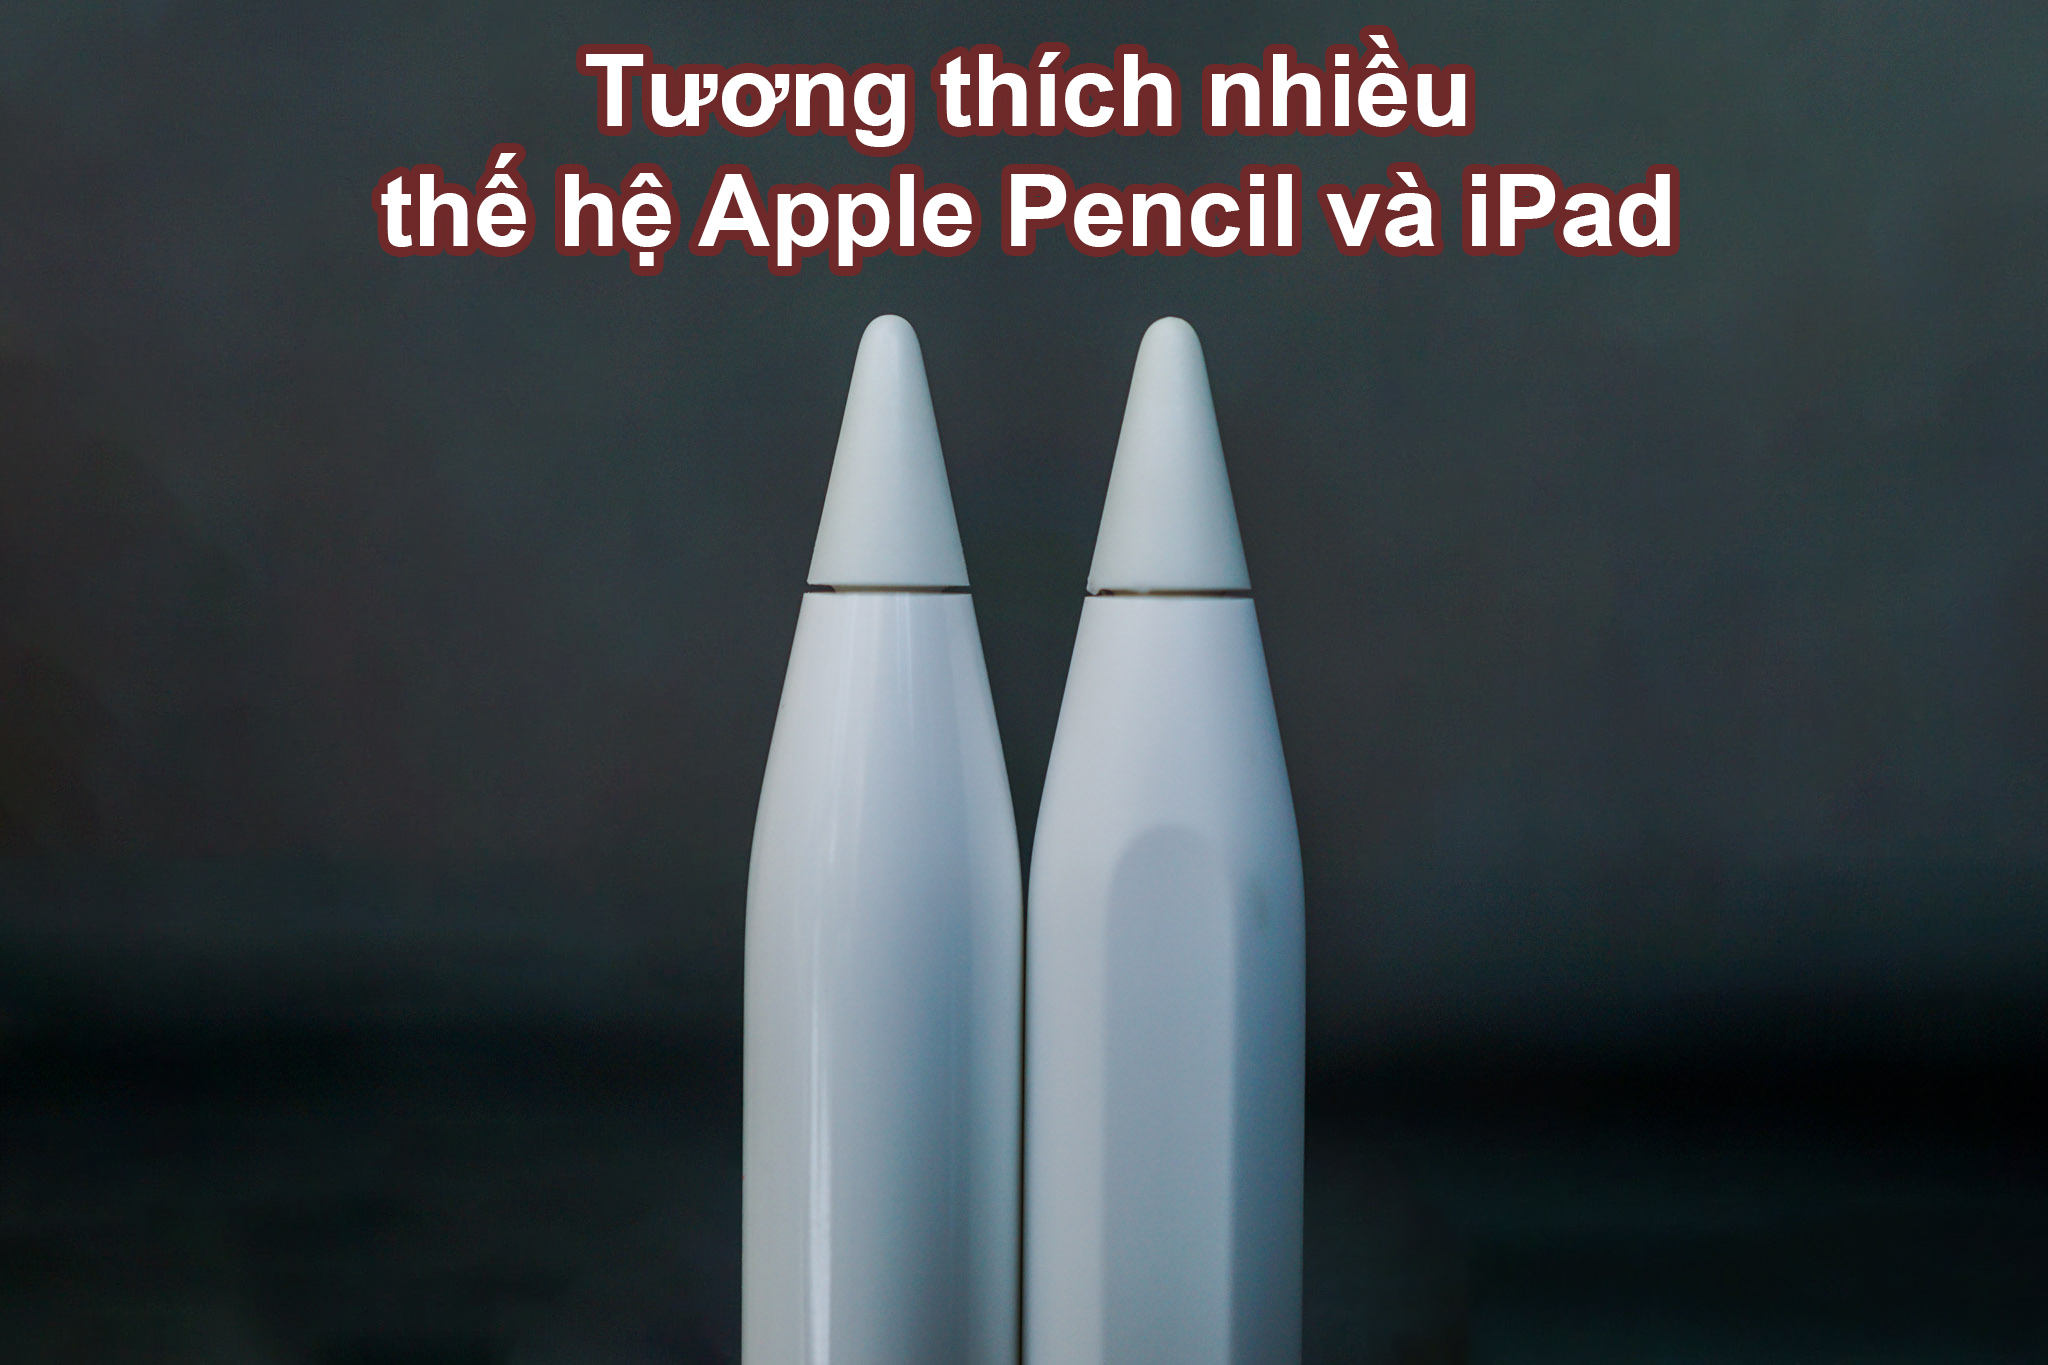 Đầu bút Apple Pencil Tips-ITP | Tương thích nhiều thiết bị và thế hệ Apple Pencil